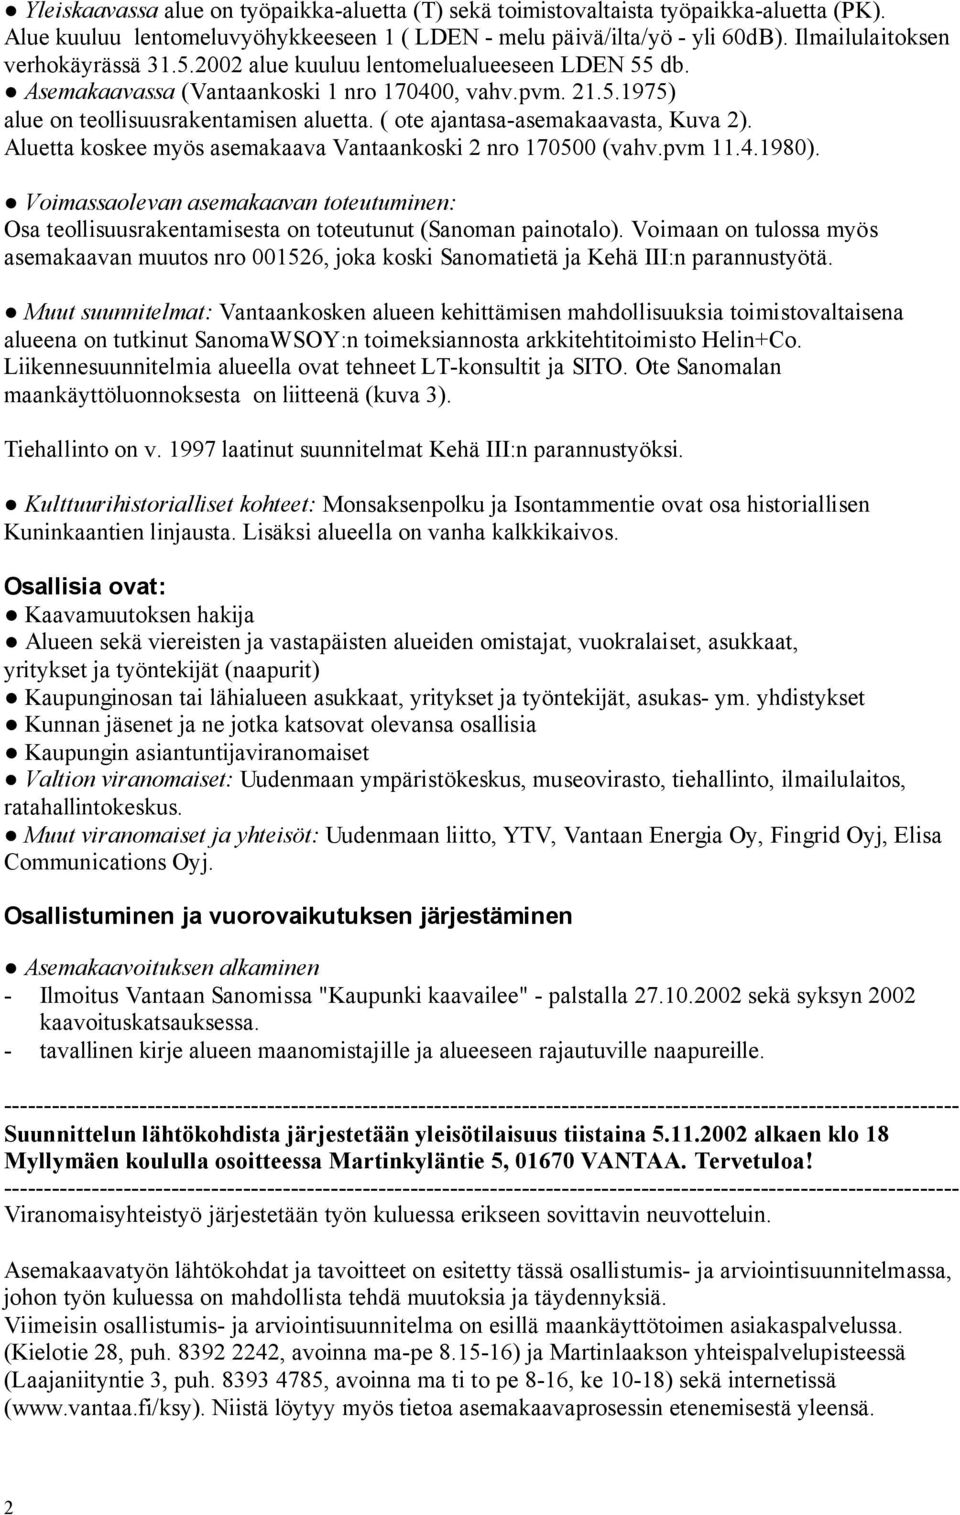 ( ote ajantasa-asemakaavasta, Kuva 2). Aluetta koskee myös asemakaava Vantaankoski 2 nro 170500 (vahv.pvm 11.4.1980).